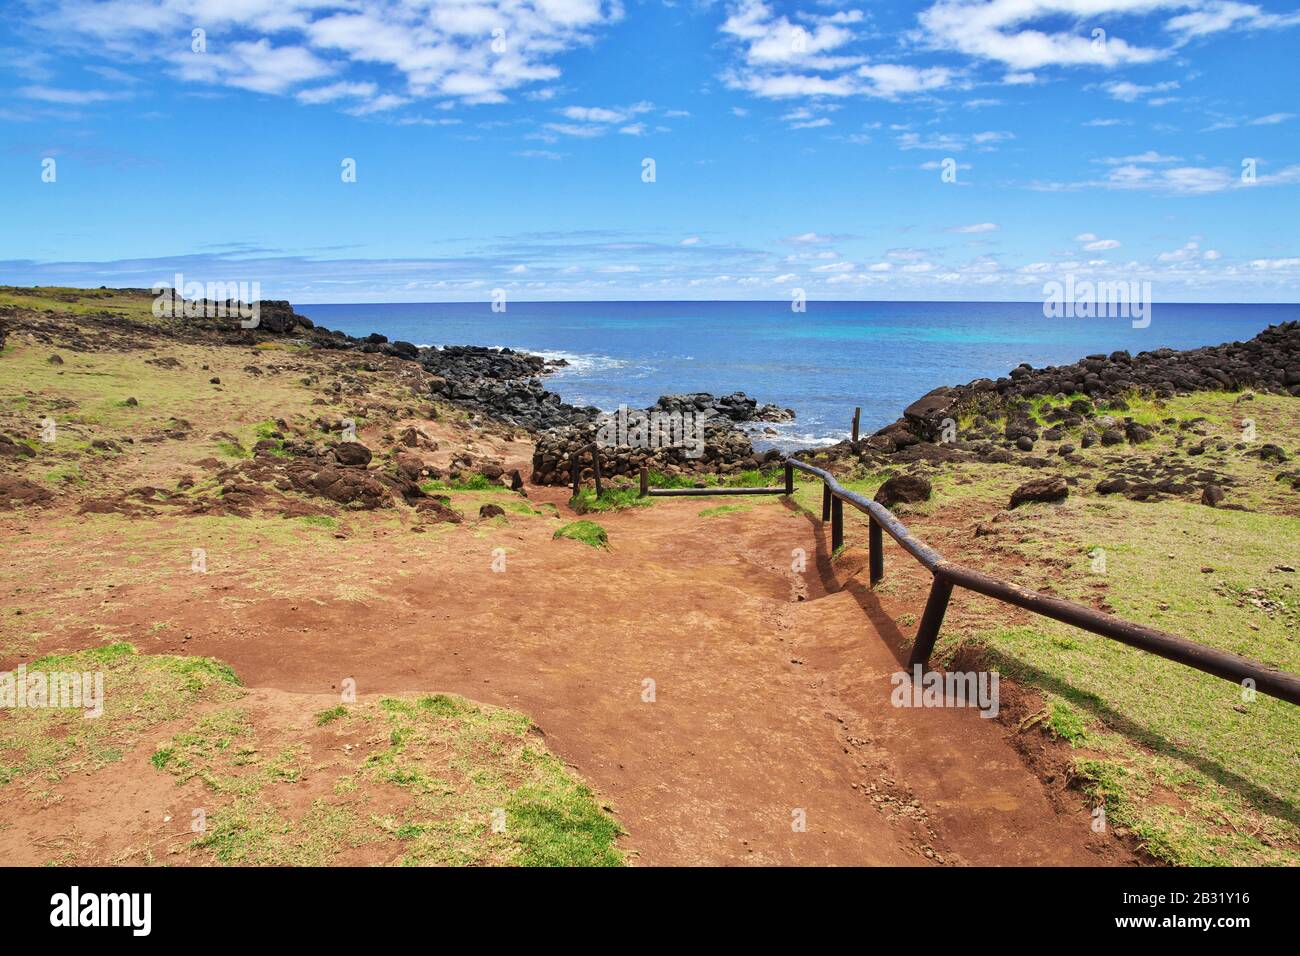 Rapa Nui. Ahu Te Pito Kura on Easter Island, Chile Stock Photo